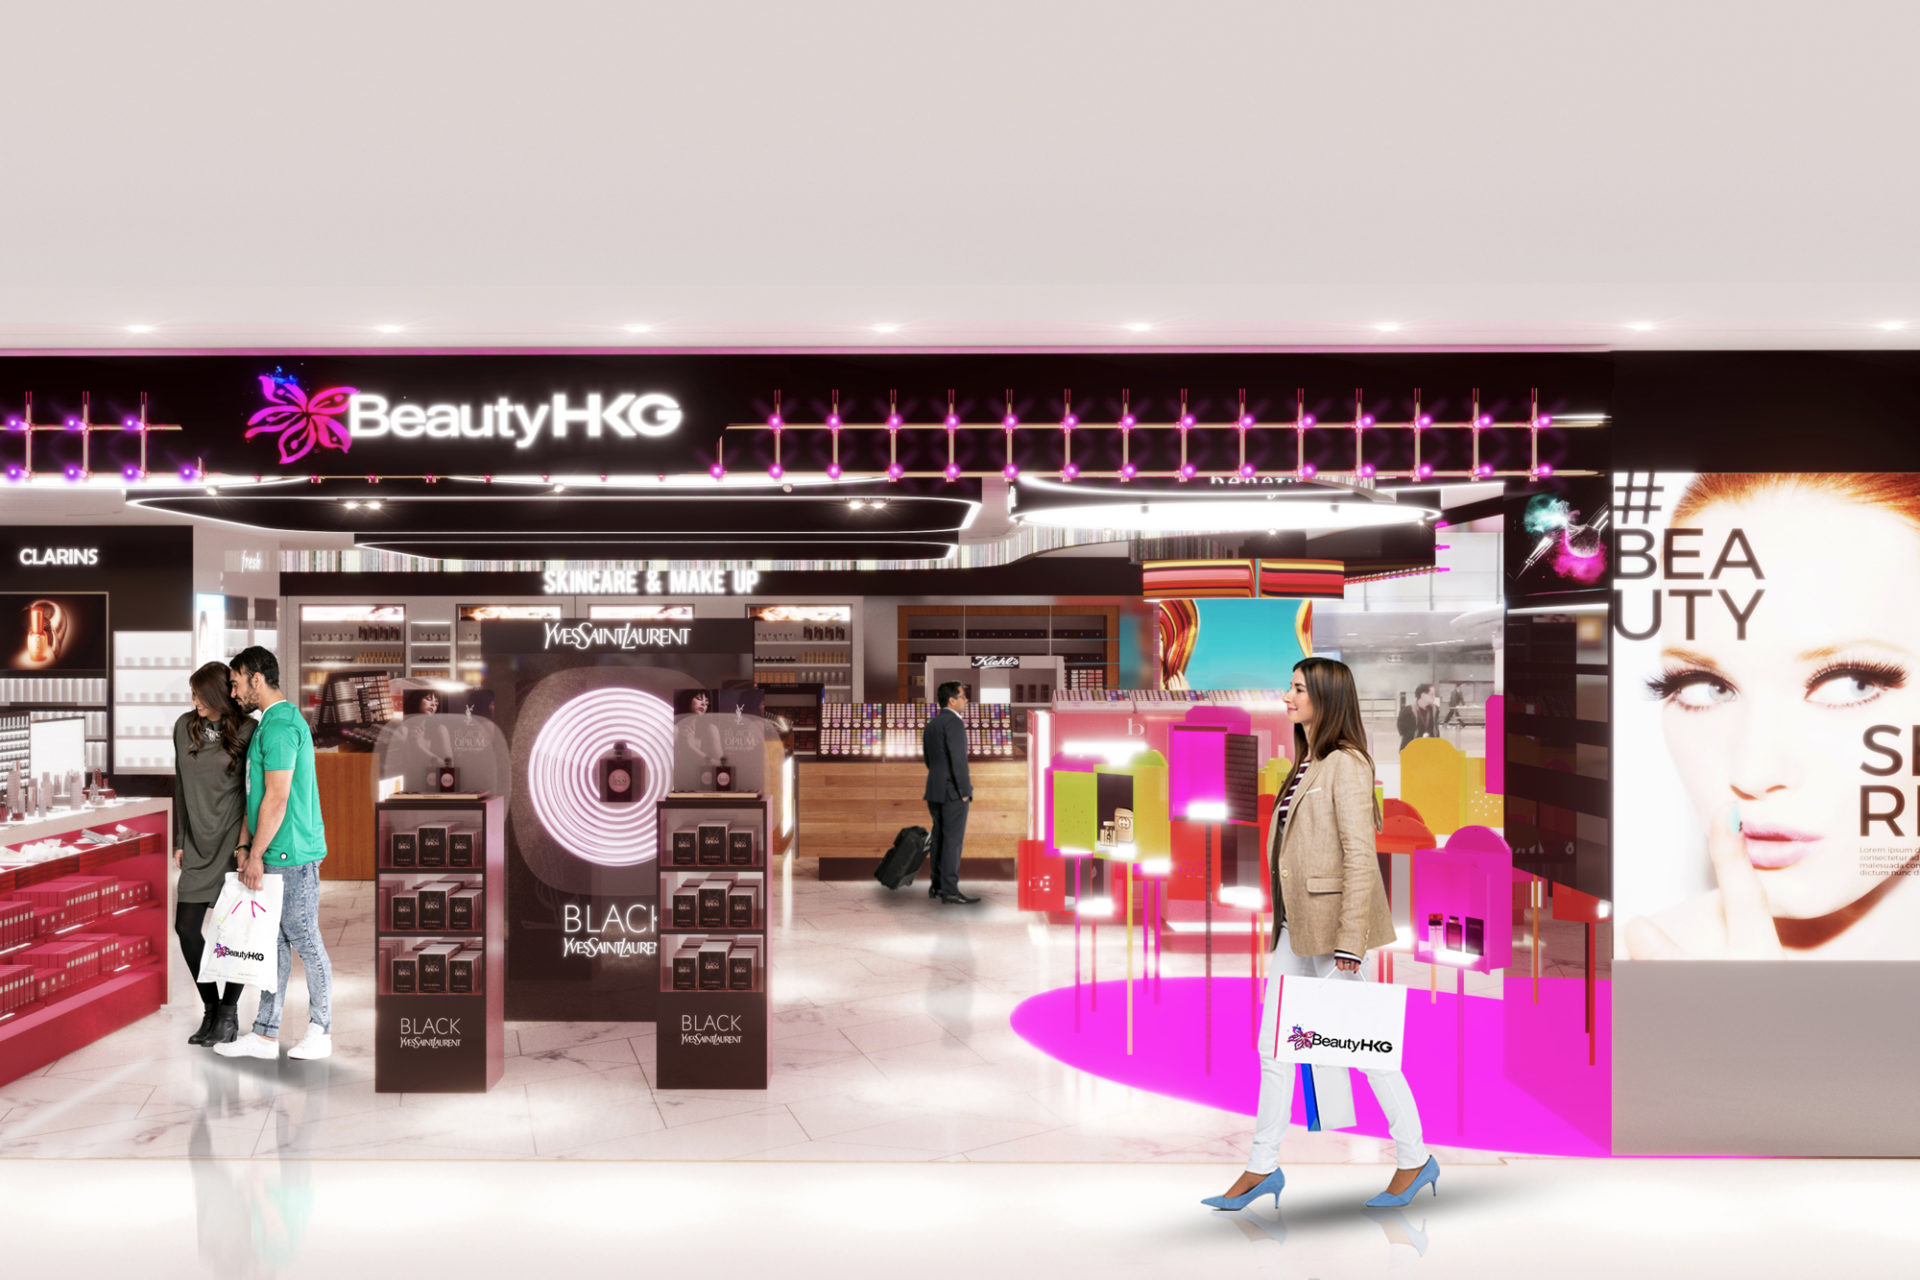 Hong Kong airport brand activation and POS display